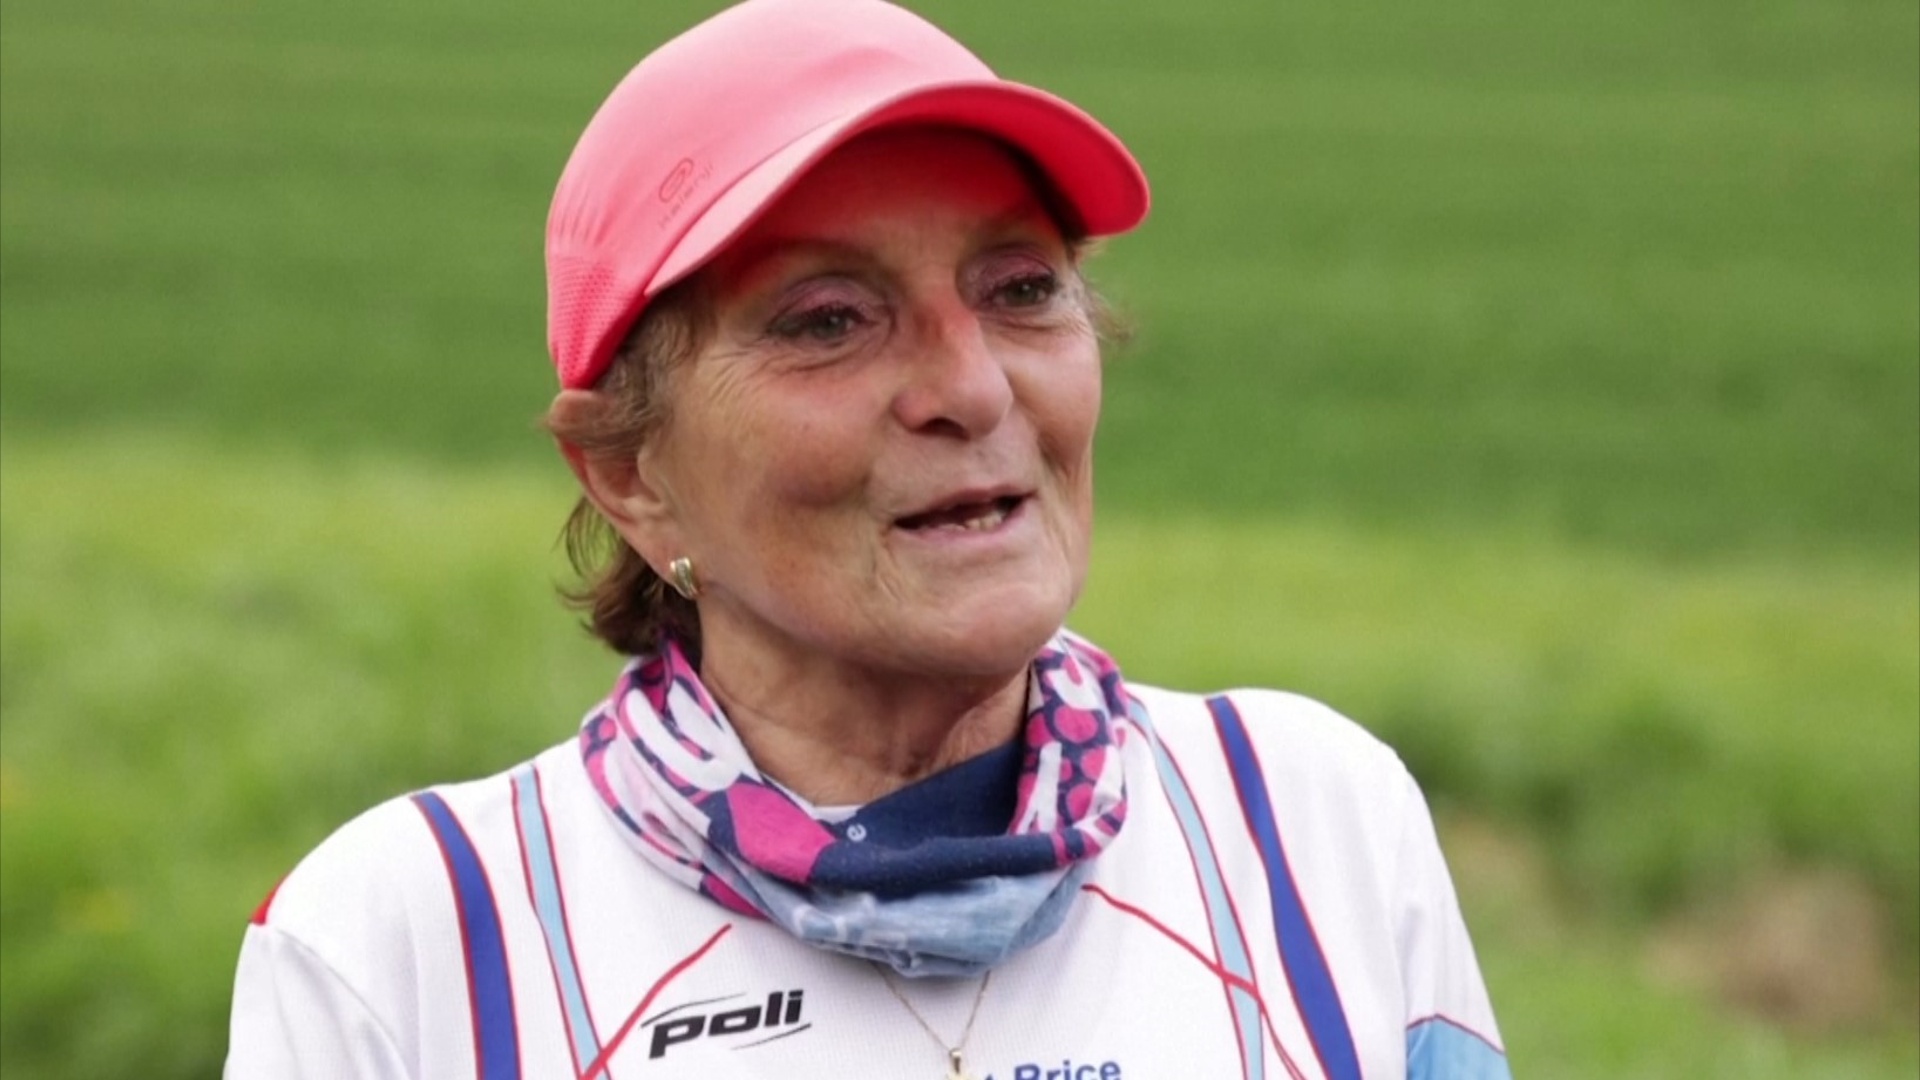 83-летняя бегунья мечтает участвовать в олимпийском «Марафоне для всех» в 2024 году